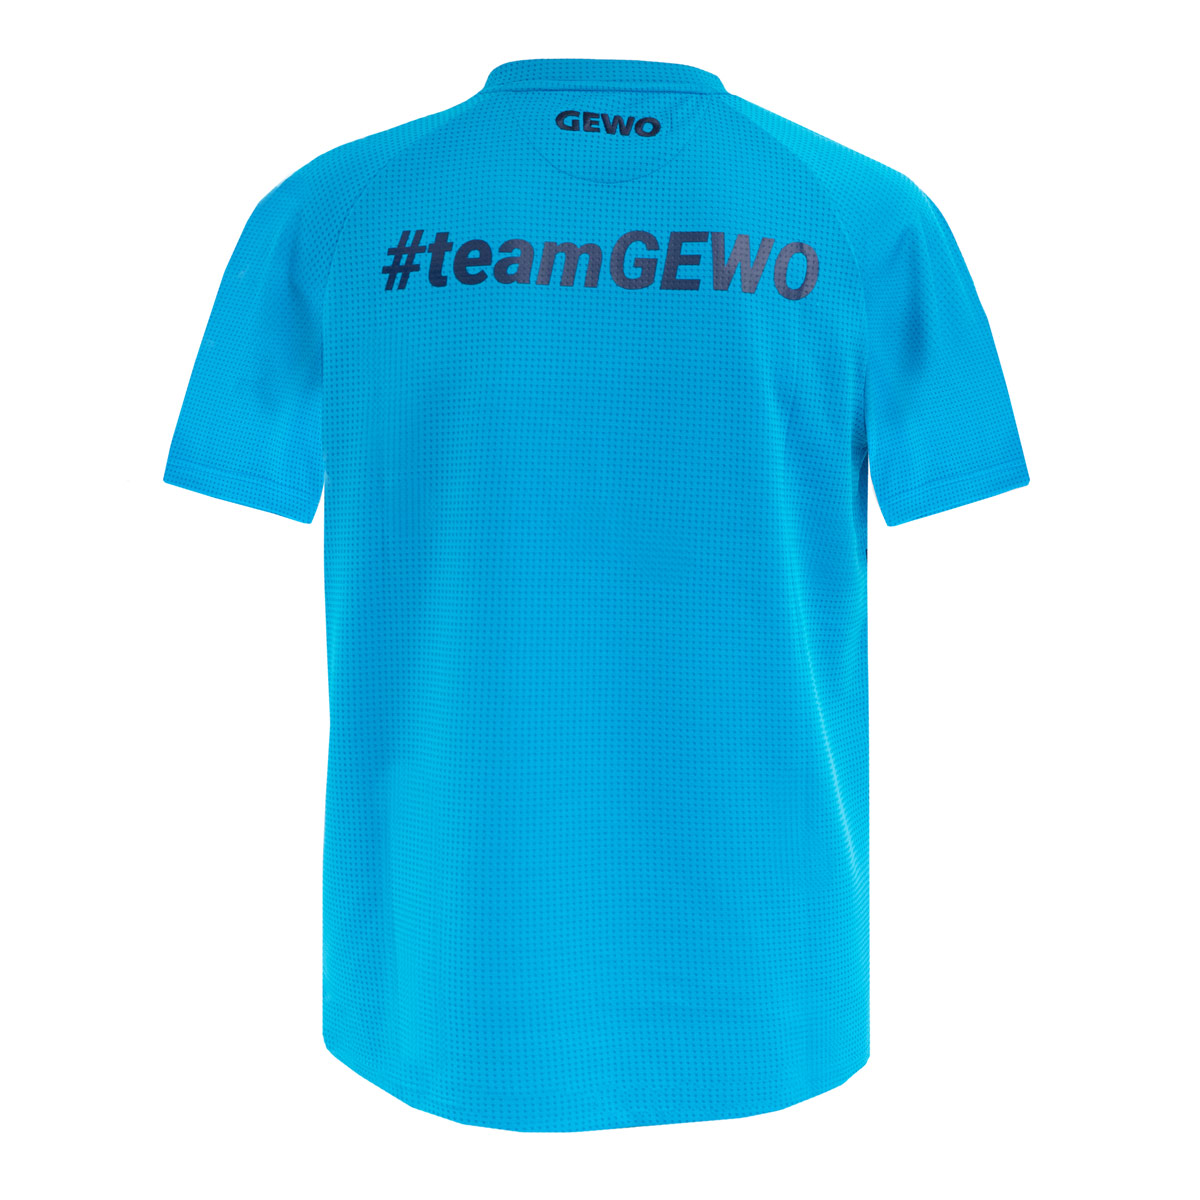 GEWO T-Shirt Belas Promo #teamGEWO blue/navy XS